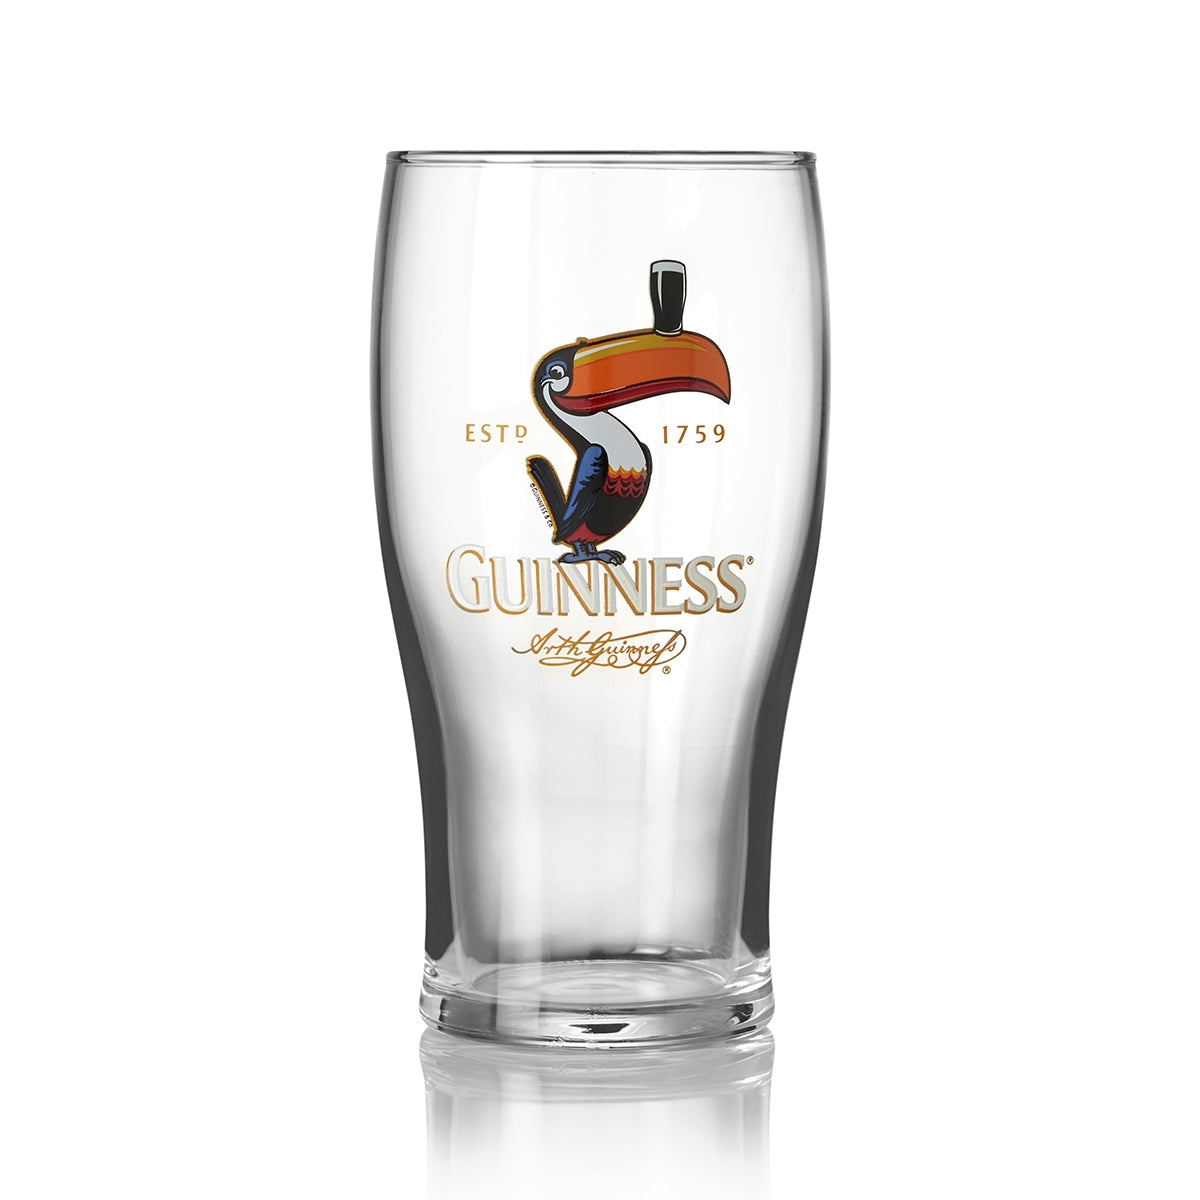 Guinness UK Guinness Toucan Pint Glass - 4 Pack.